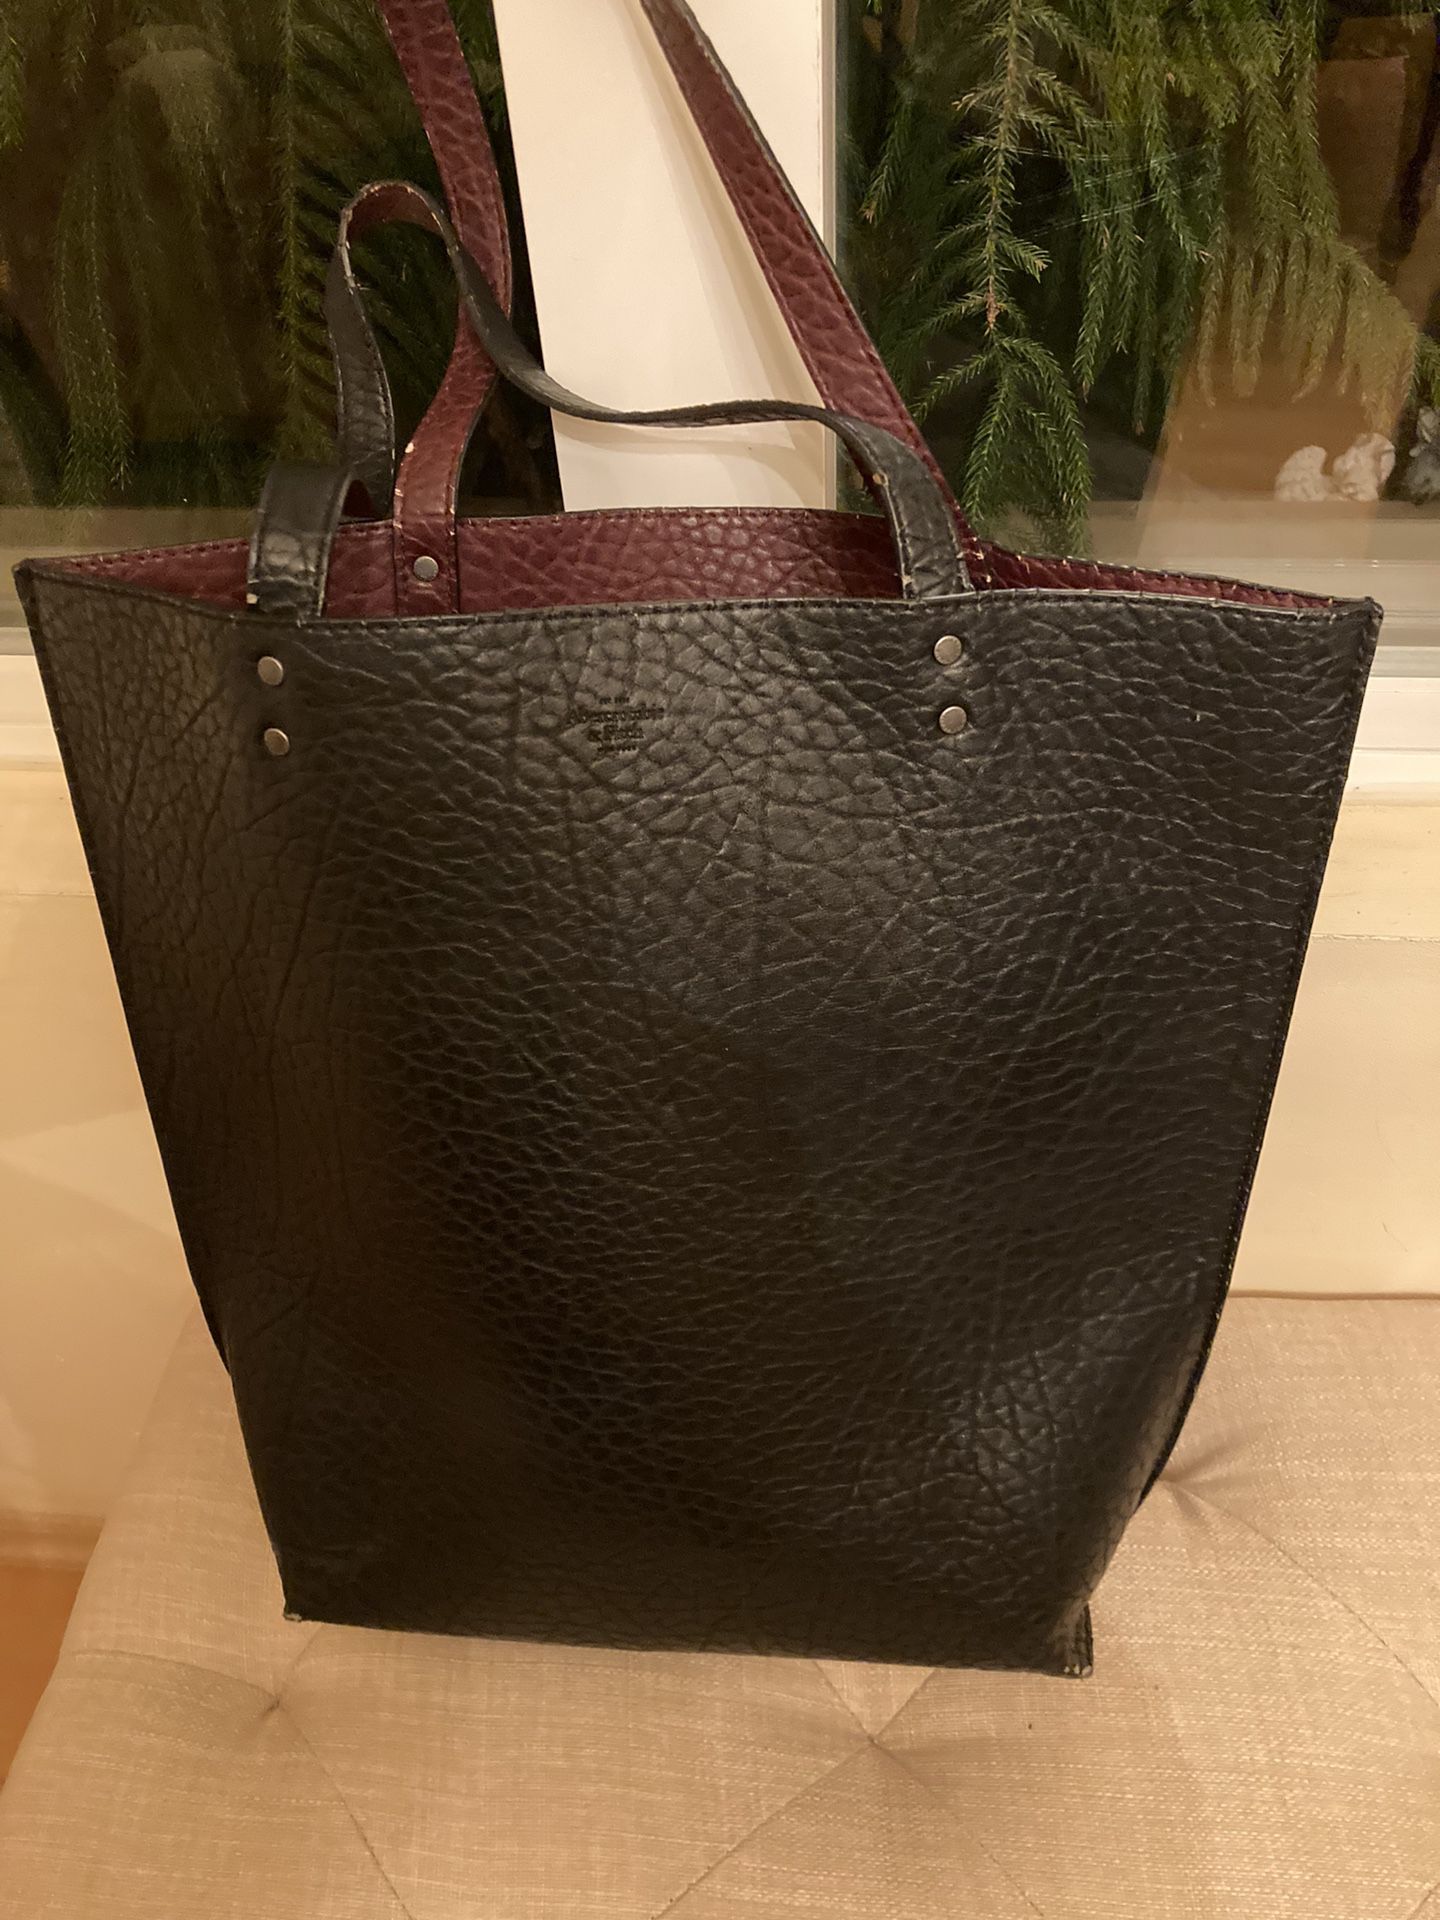 Abercrombie Leather Handbag 